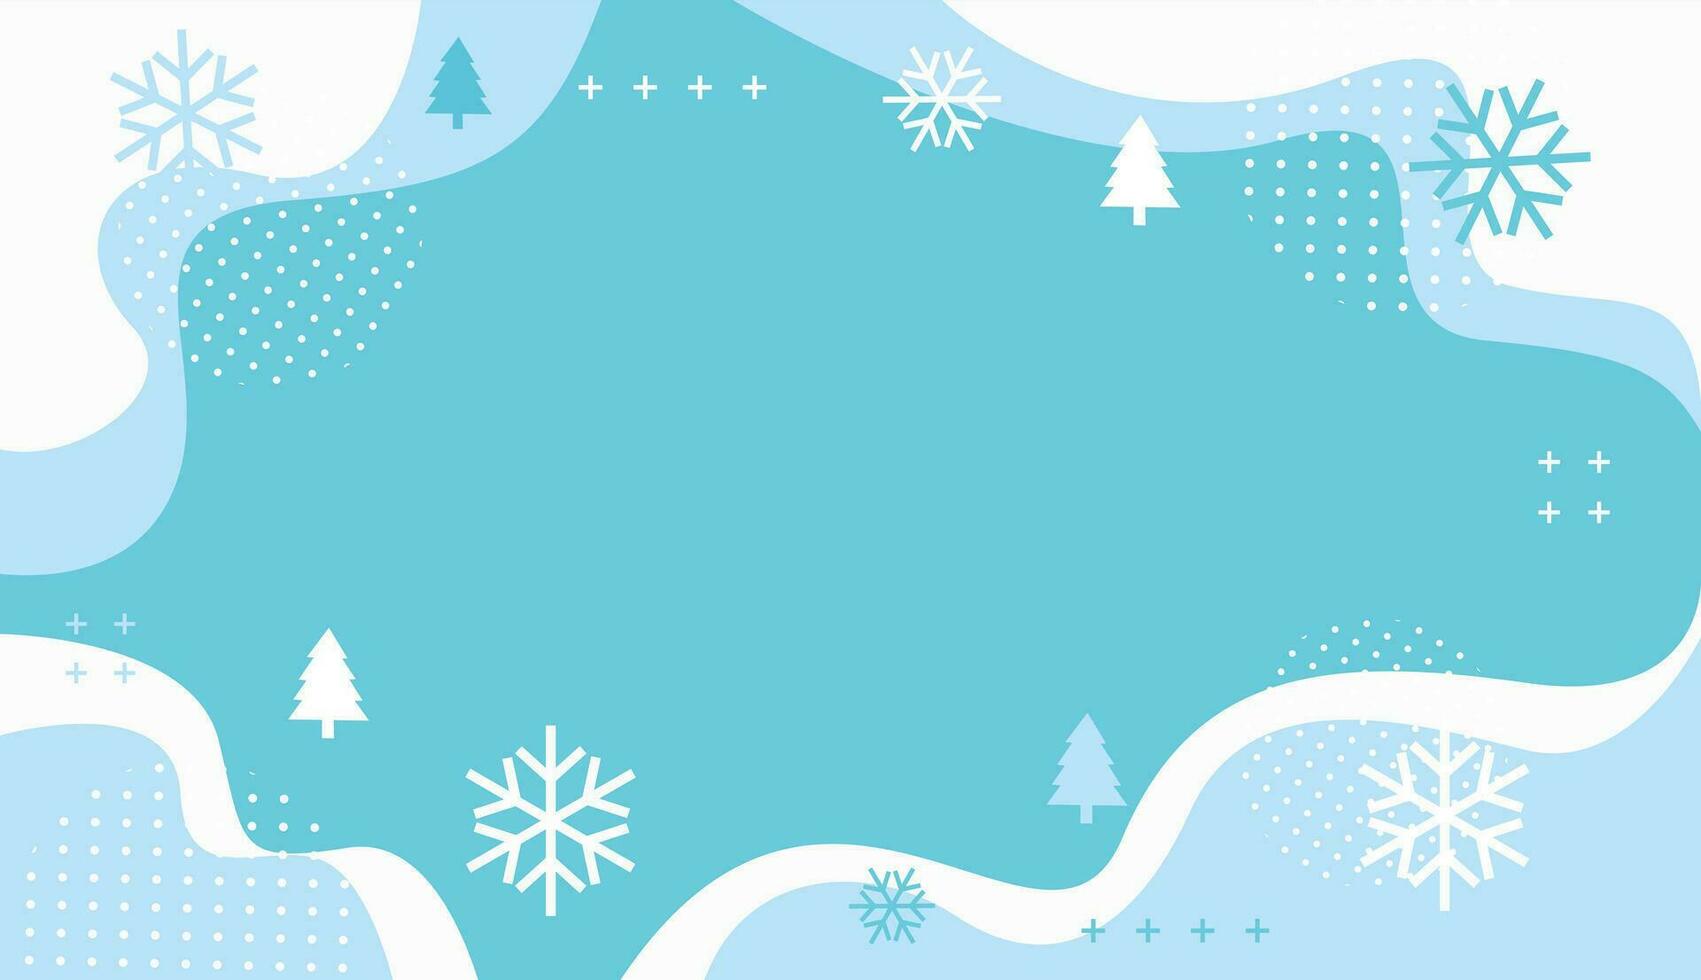 en blå bakgrund med snöflingor och träd, vinter- vektor bakgrund, tapet illustrationer med vinter- snö tema